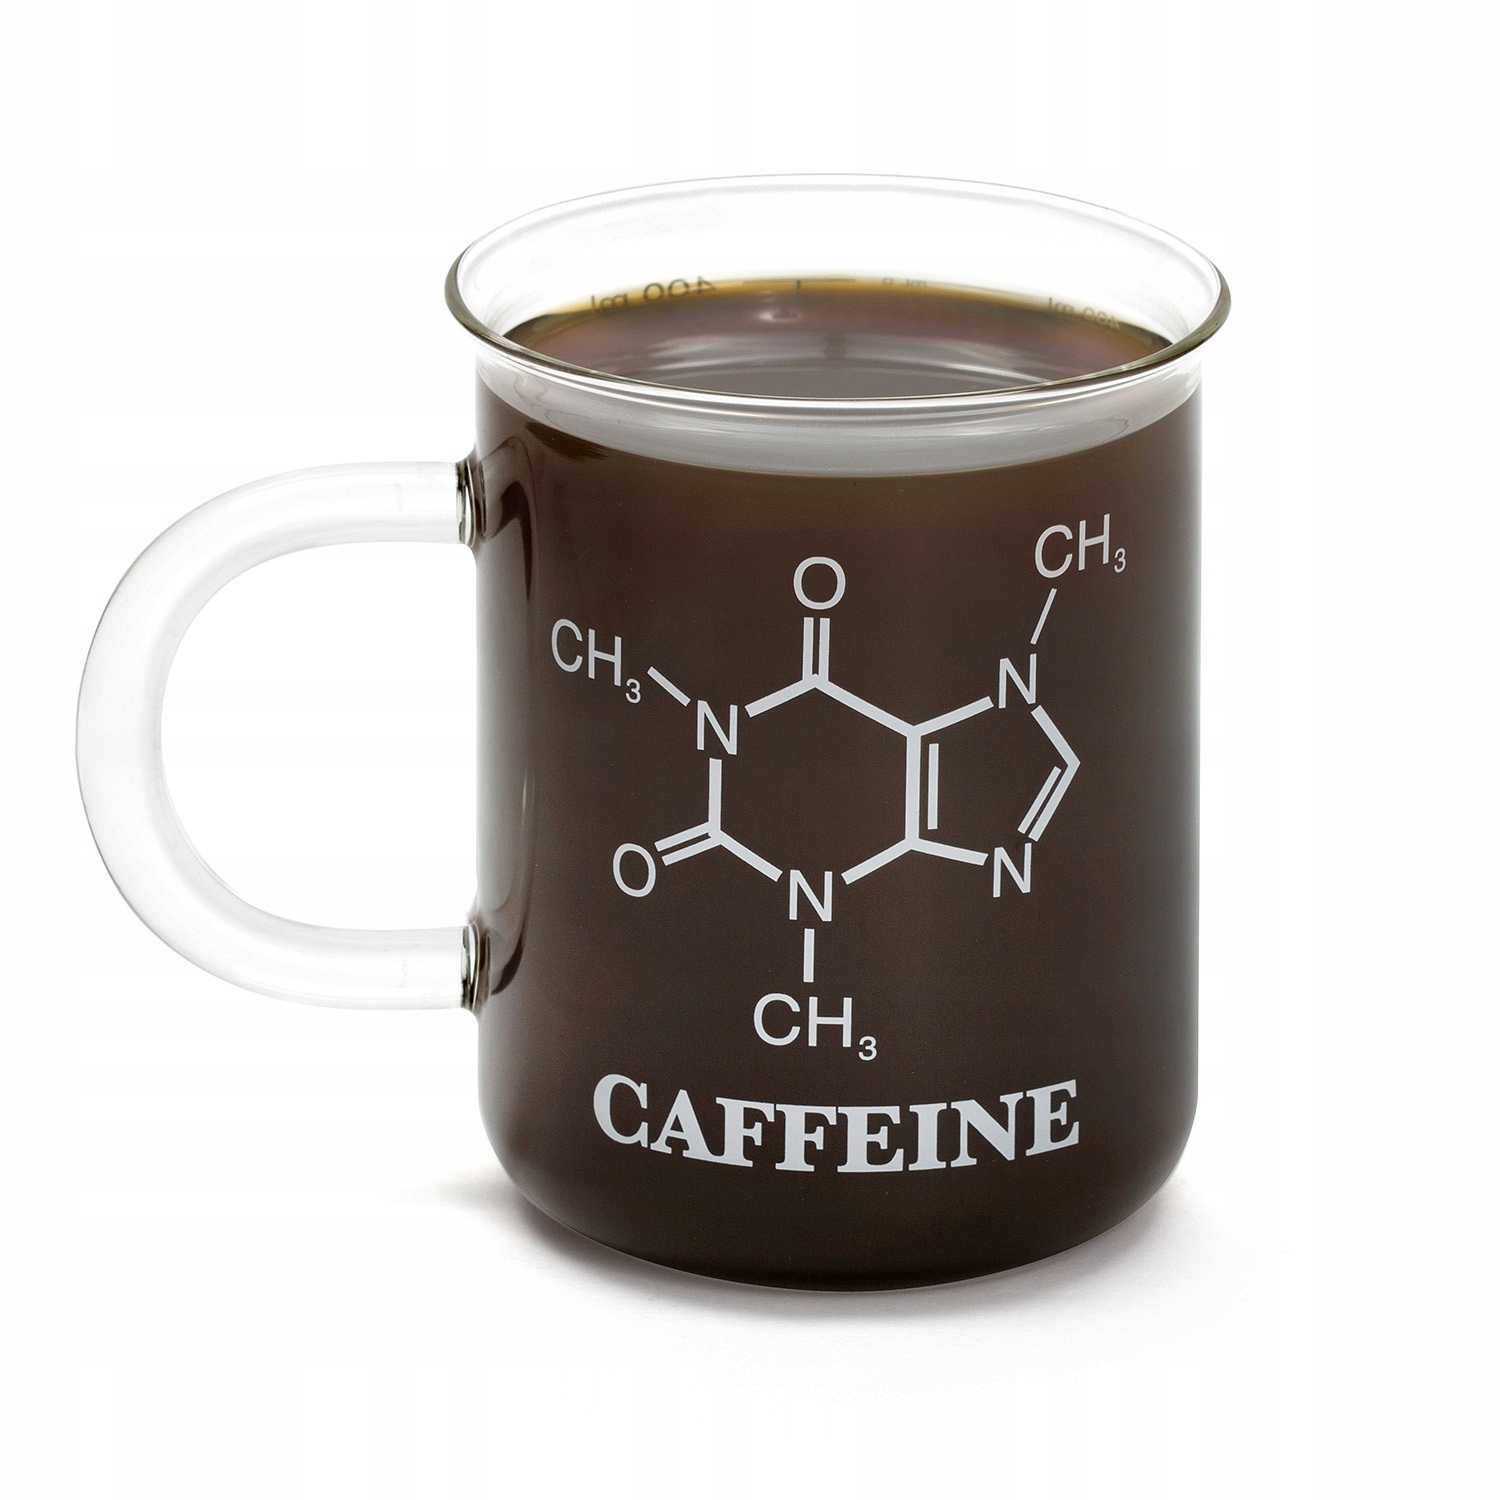 Про кофеин. Кружка для химика. Кружки с химическими формулами. Кружка кофеин. Кружка с надписью кофеин.